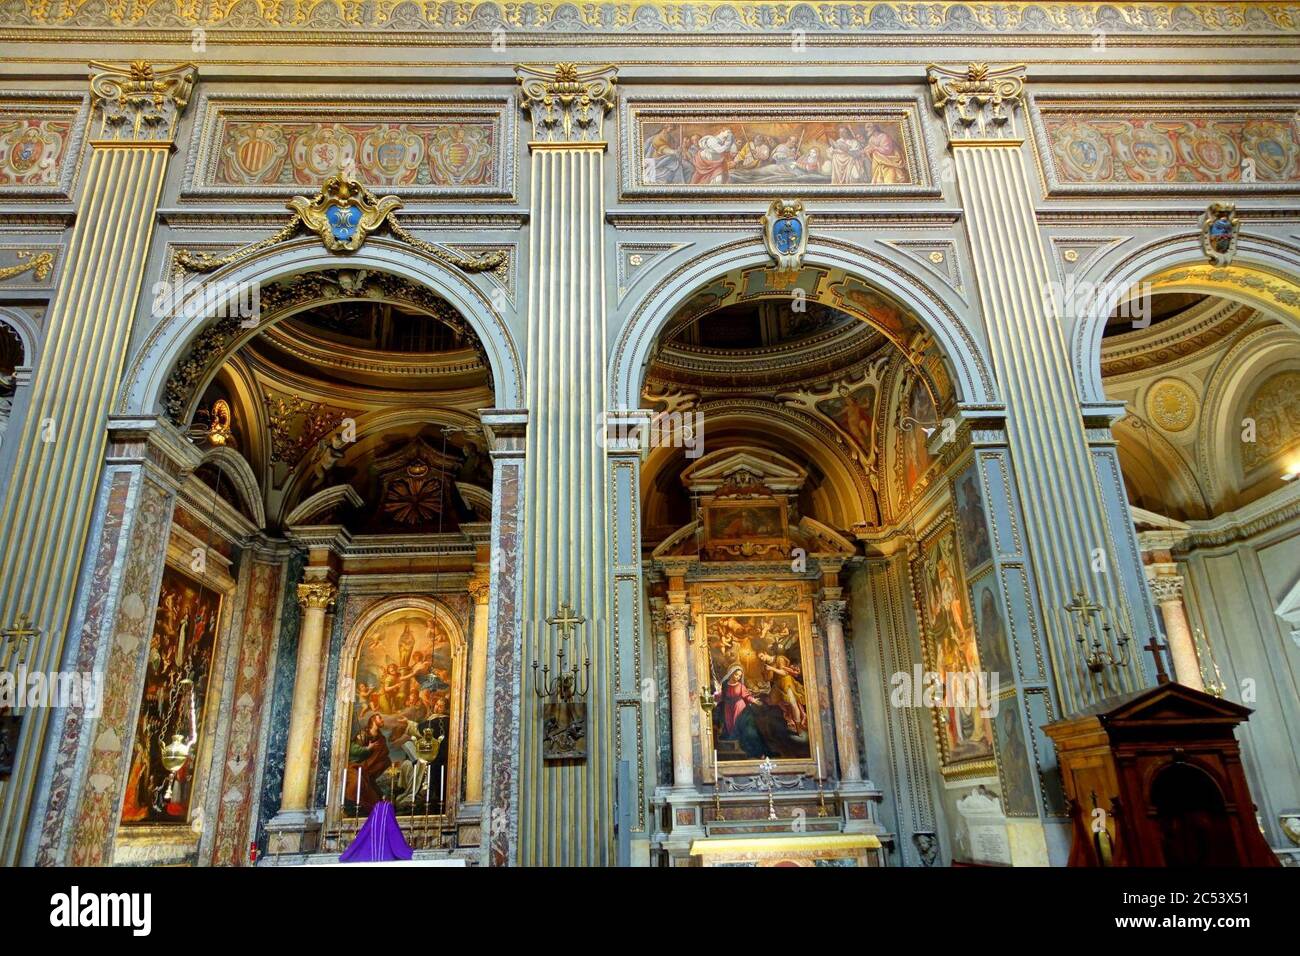 Interior - Santa Maria in Monserrato degli Spagnoli - Rome, Italy Stock Photo